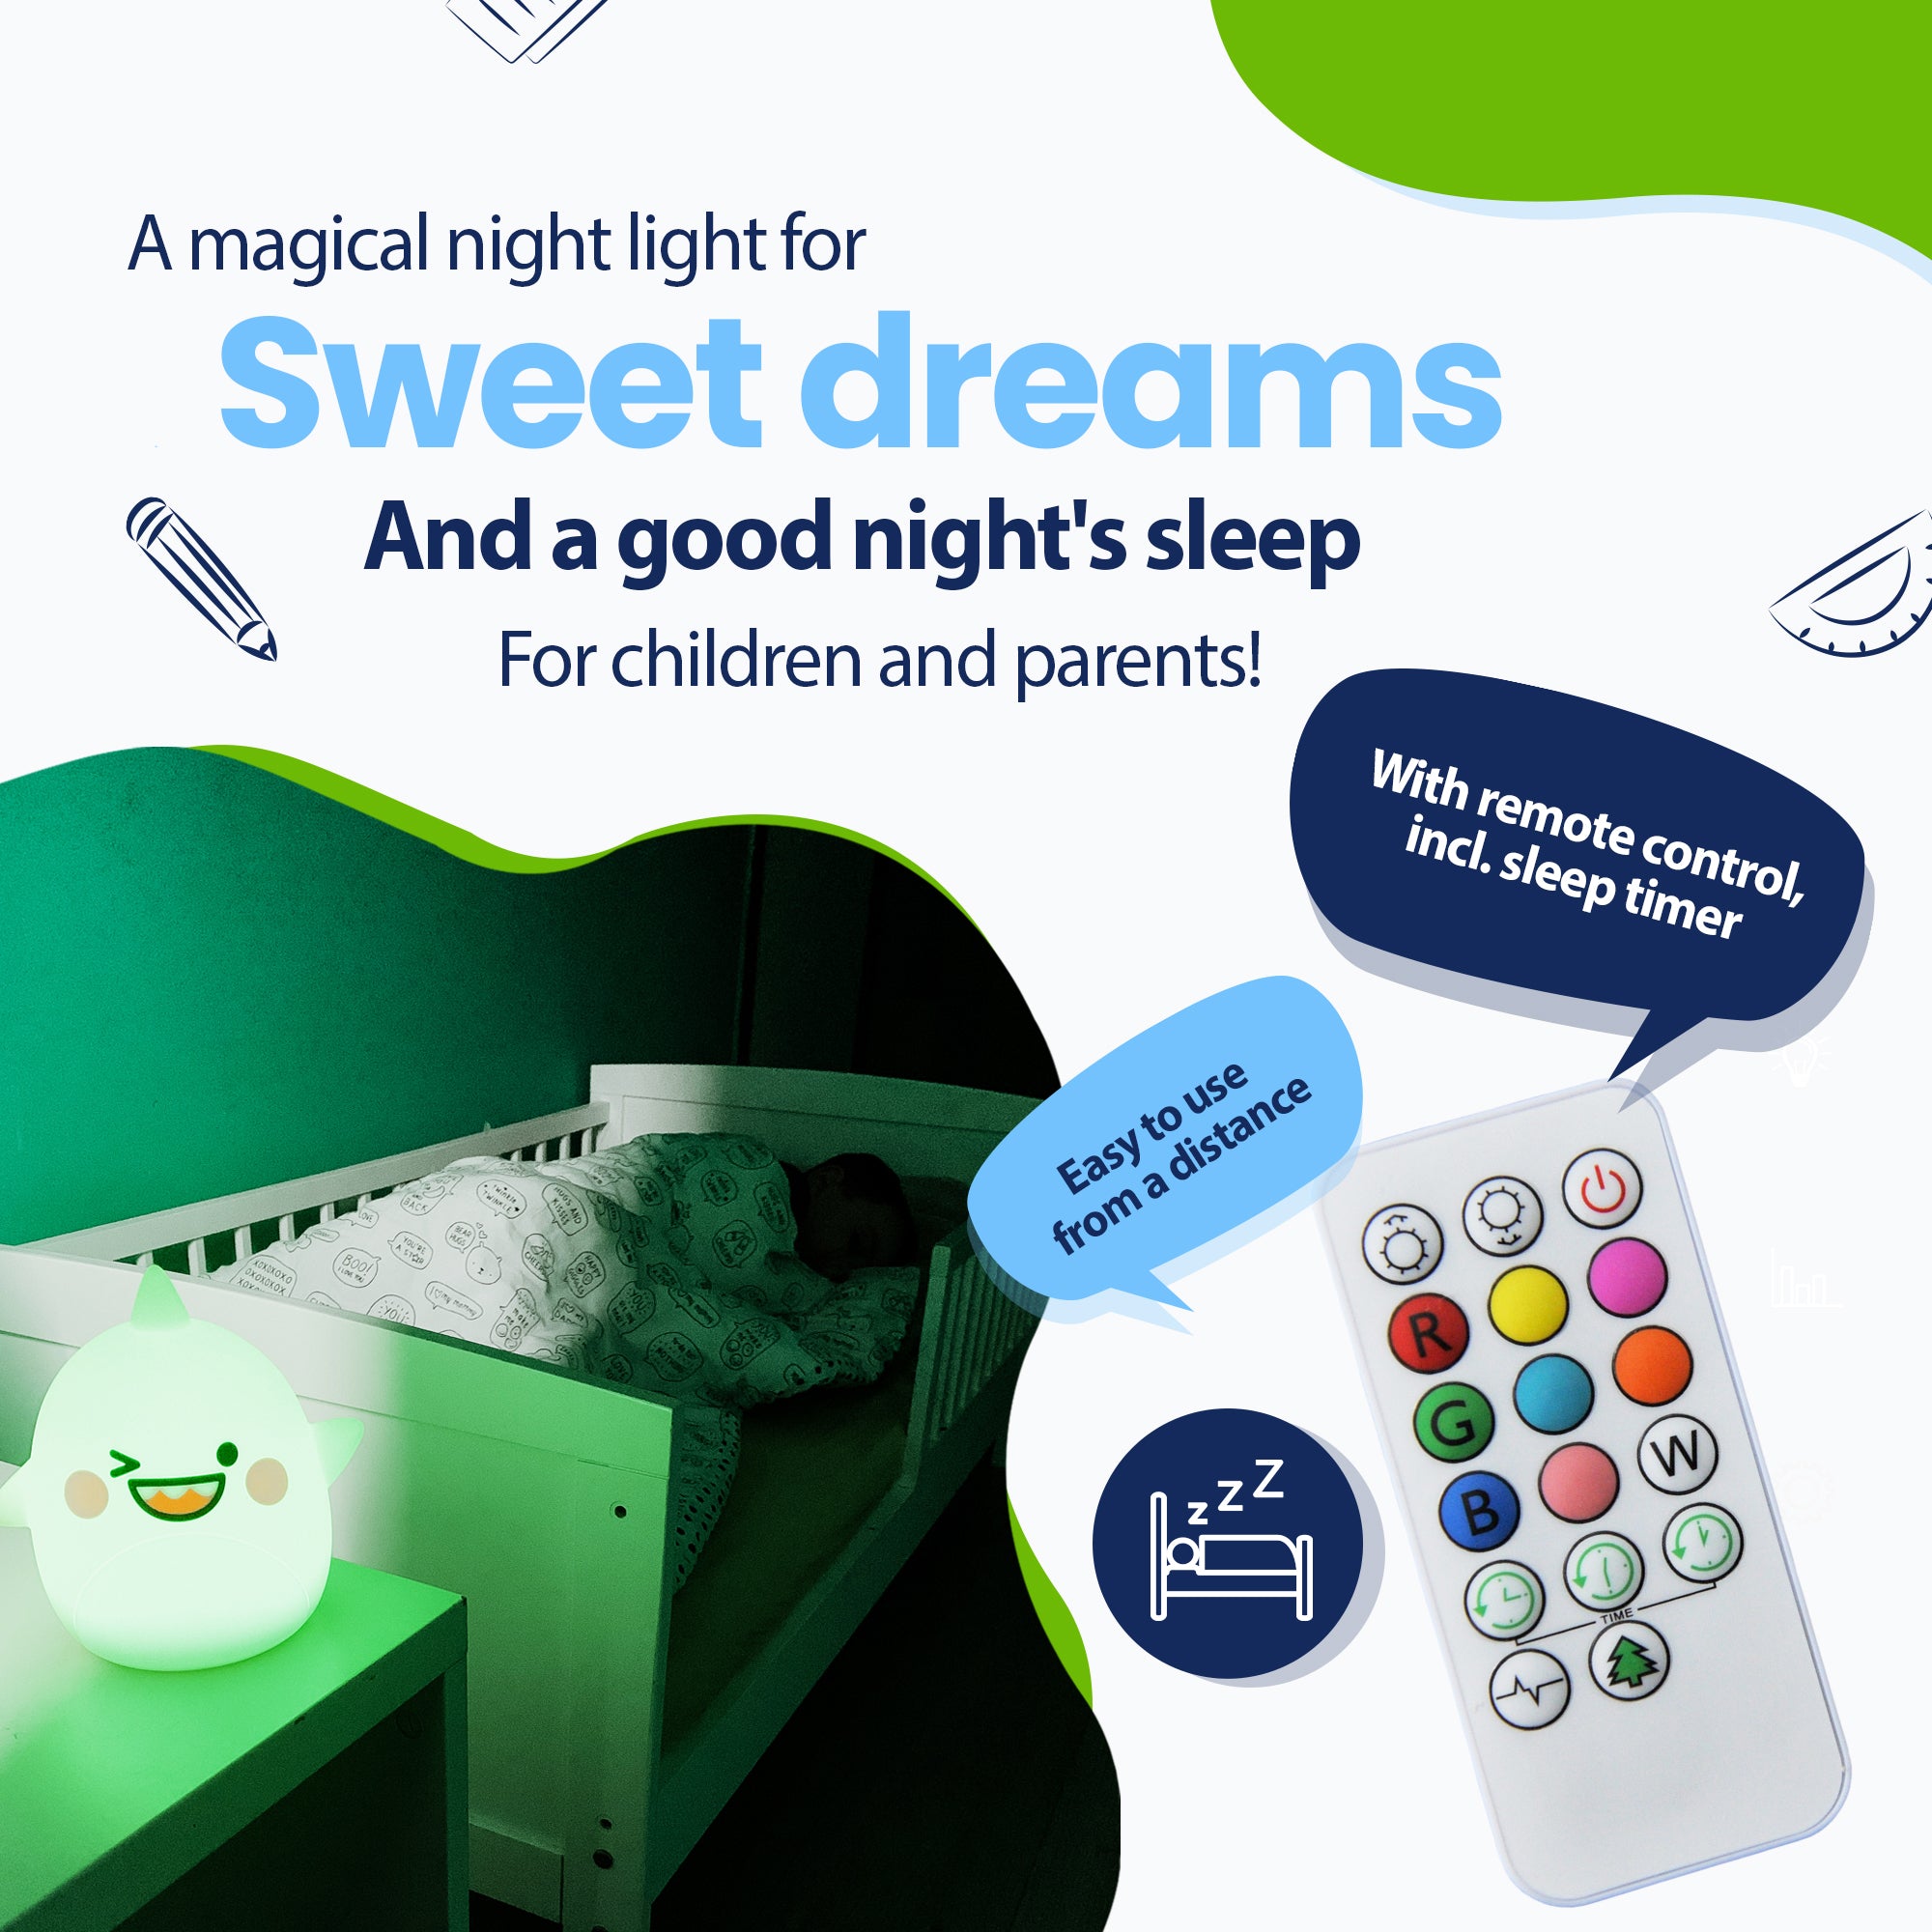 Una luz nocturna mágica para sueños placenteros y un sueño reparador para niños y padres, con control remoto que incluye temporizador para dormir, fácilmente a distancia